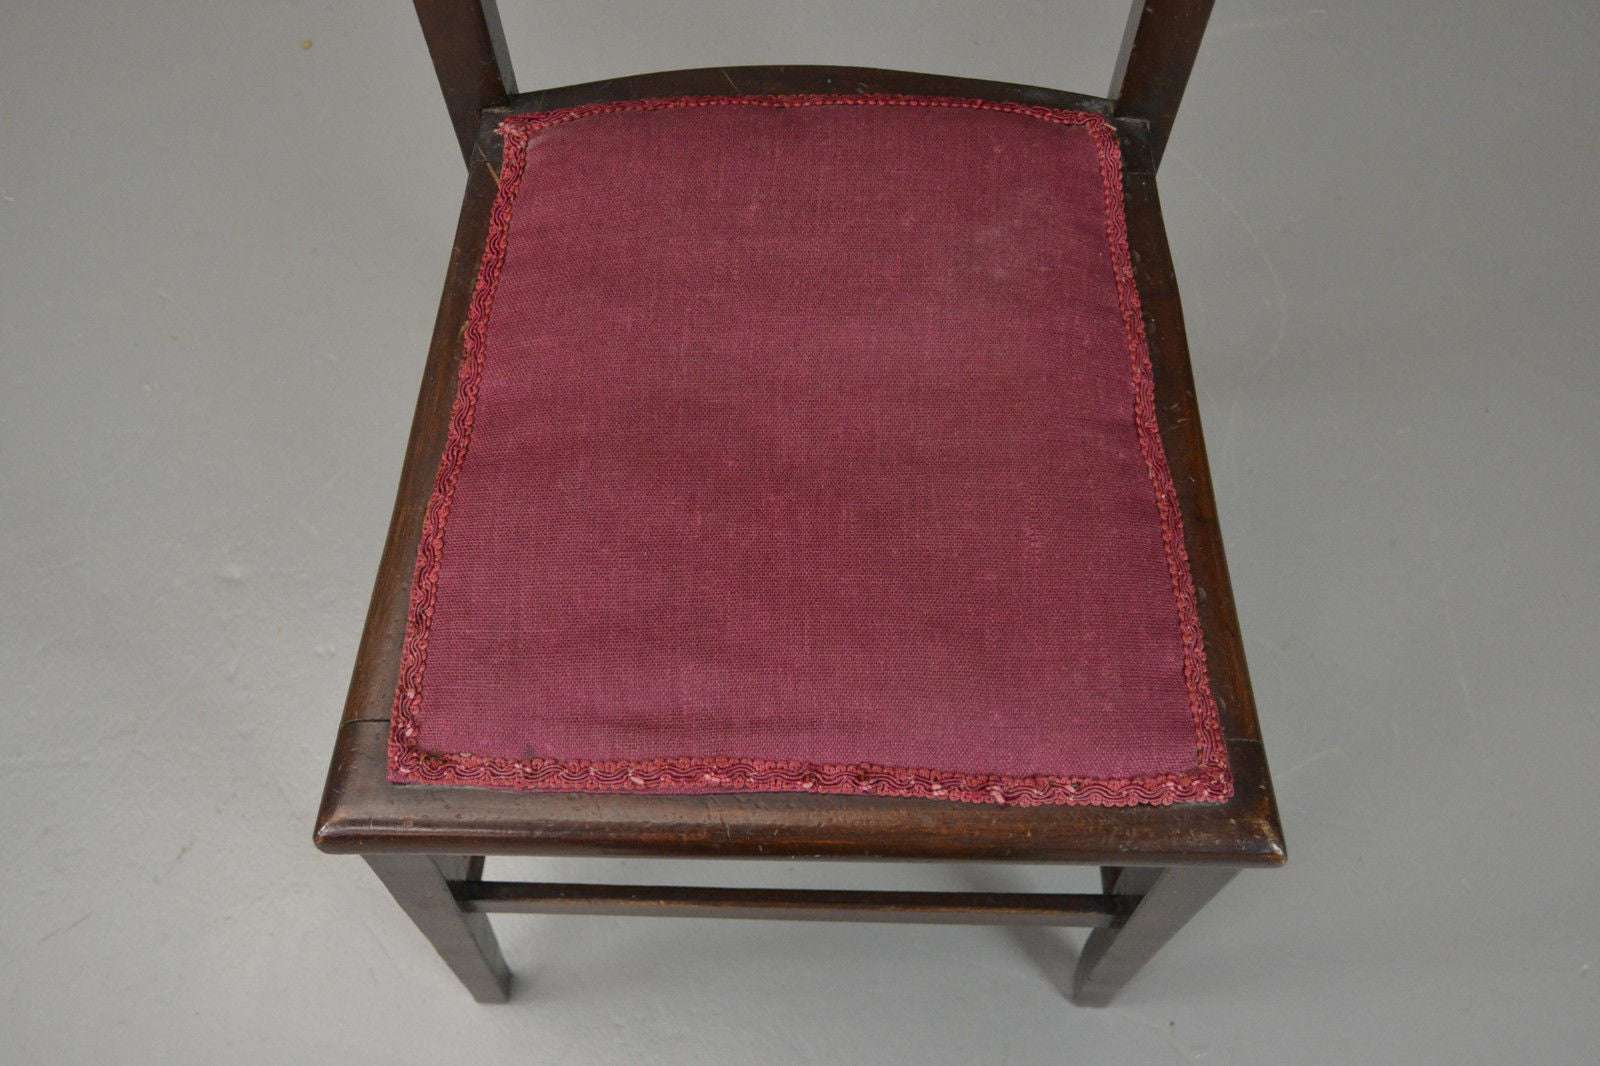 Vintage Antique Edwardian Occasional Bedroom Side Chair - Kernow Furniture